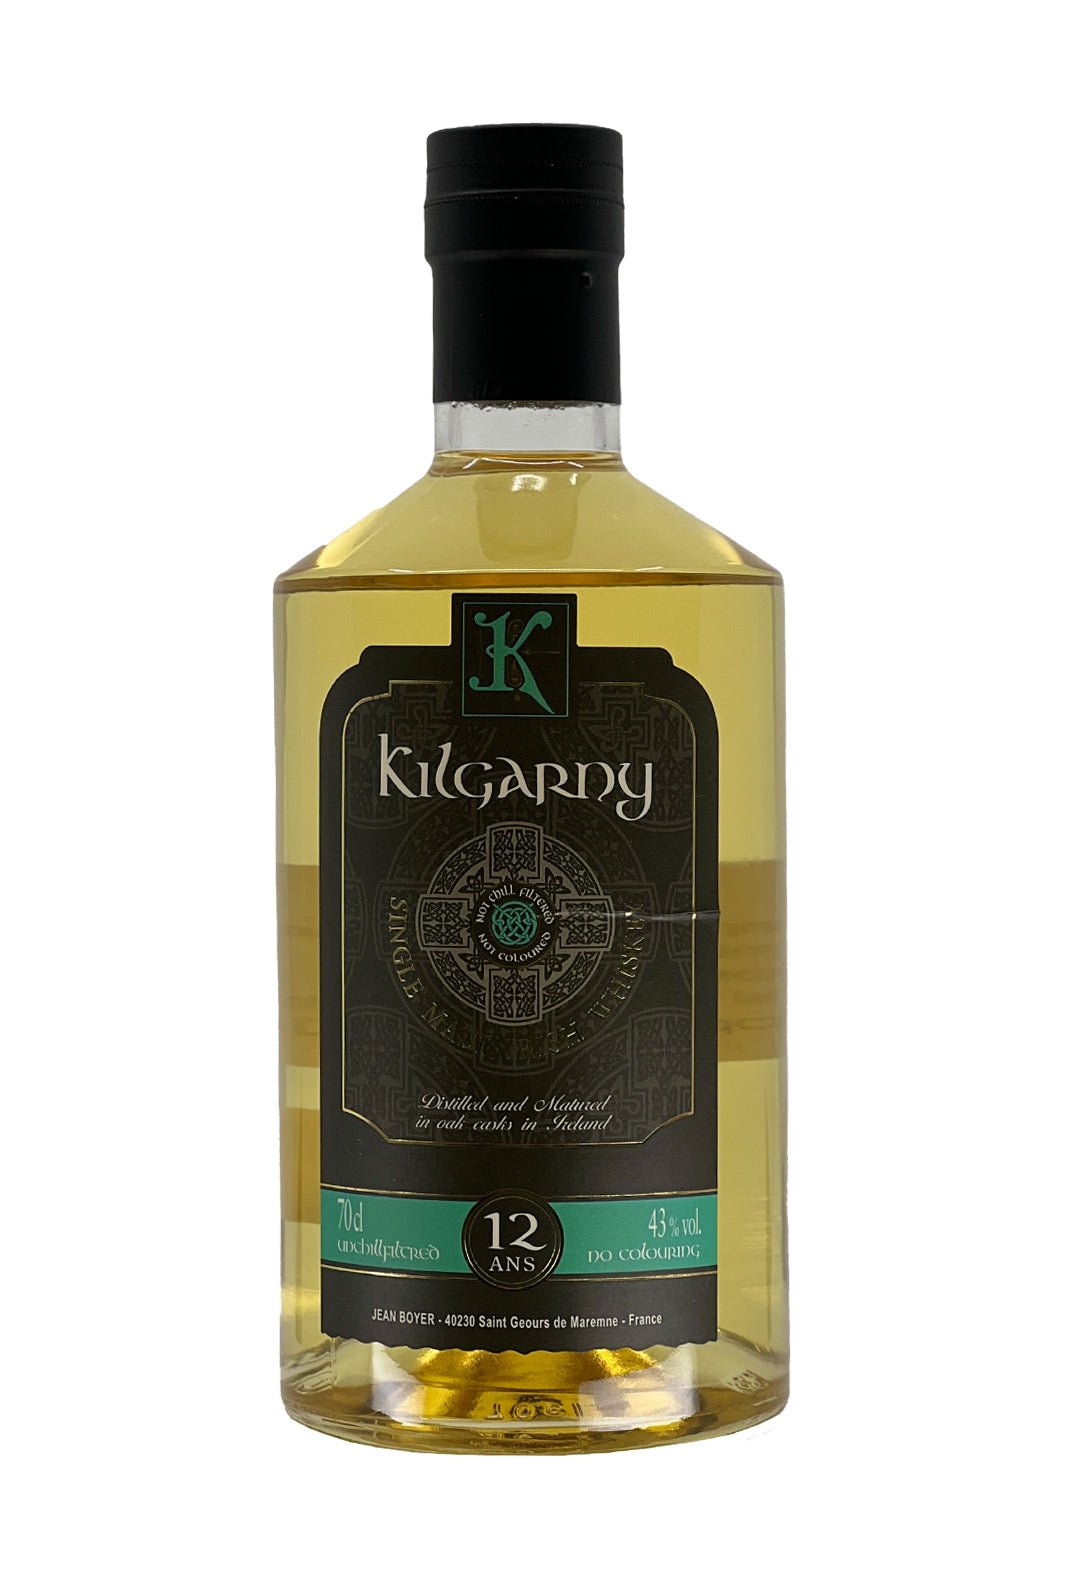 Jean Boyer Kilgarny 12 years Irish Whisky 43% 700ml - Whisky - Liquor Wine Cave